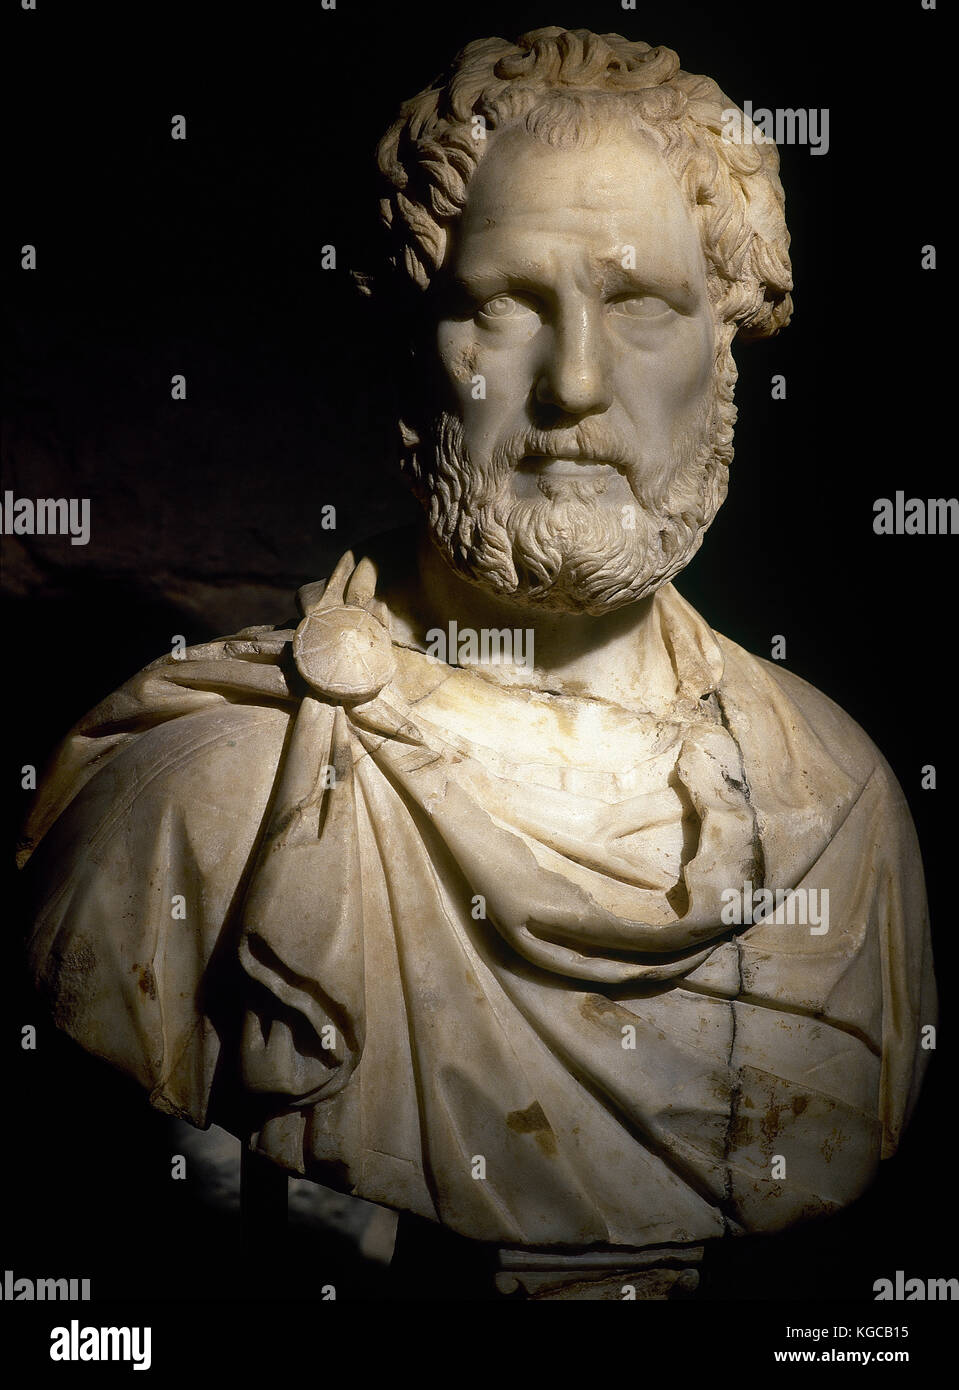 Römische Büste wahrscheinlich römischen Kaiser Antoninus Pius (86-161 ad). Marmor. 2. das Museum der Geschichte der Stadt. Barcelona. Spanien. Stockfoto